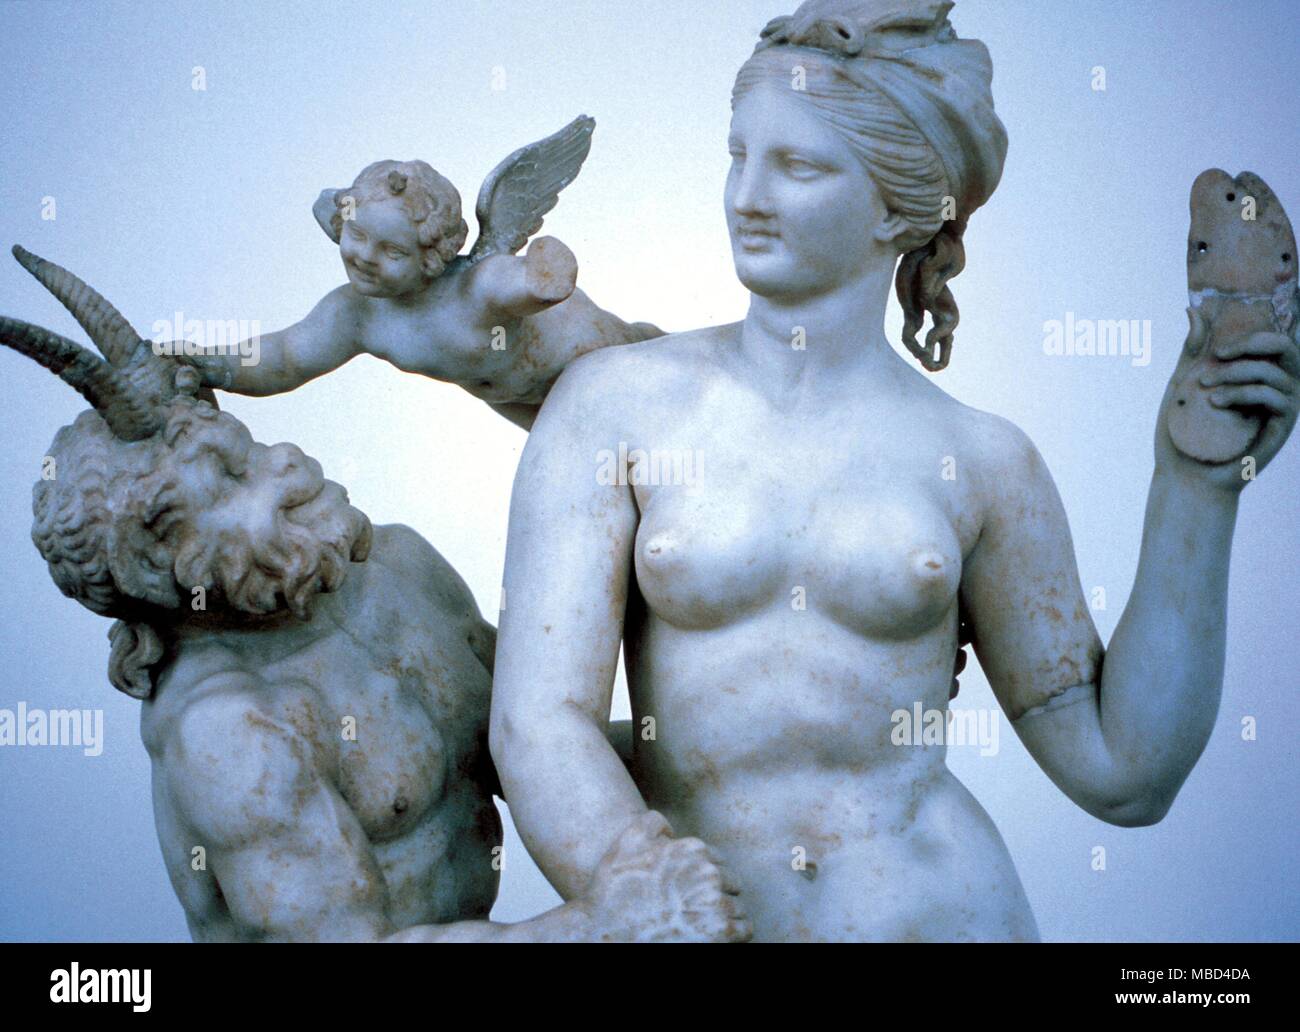 La mythologie grecque. Vénus, Cupidon et Pan. La statuaire grecque antique de Vénus, Cupidon et Pan dans le Musée National, Athènes. À partir de l'île sacrée de Délos. Peut être des copies romaines. Banque D'Images